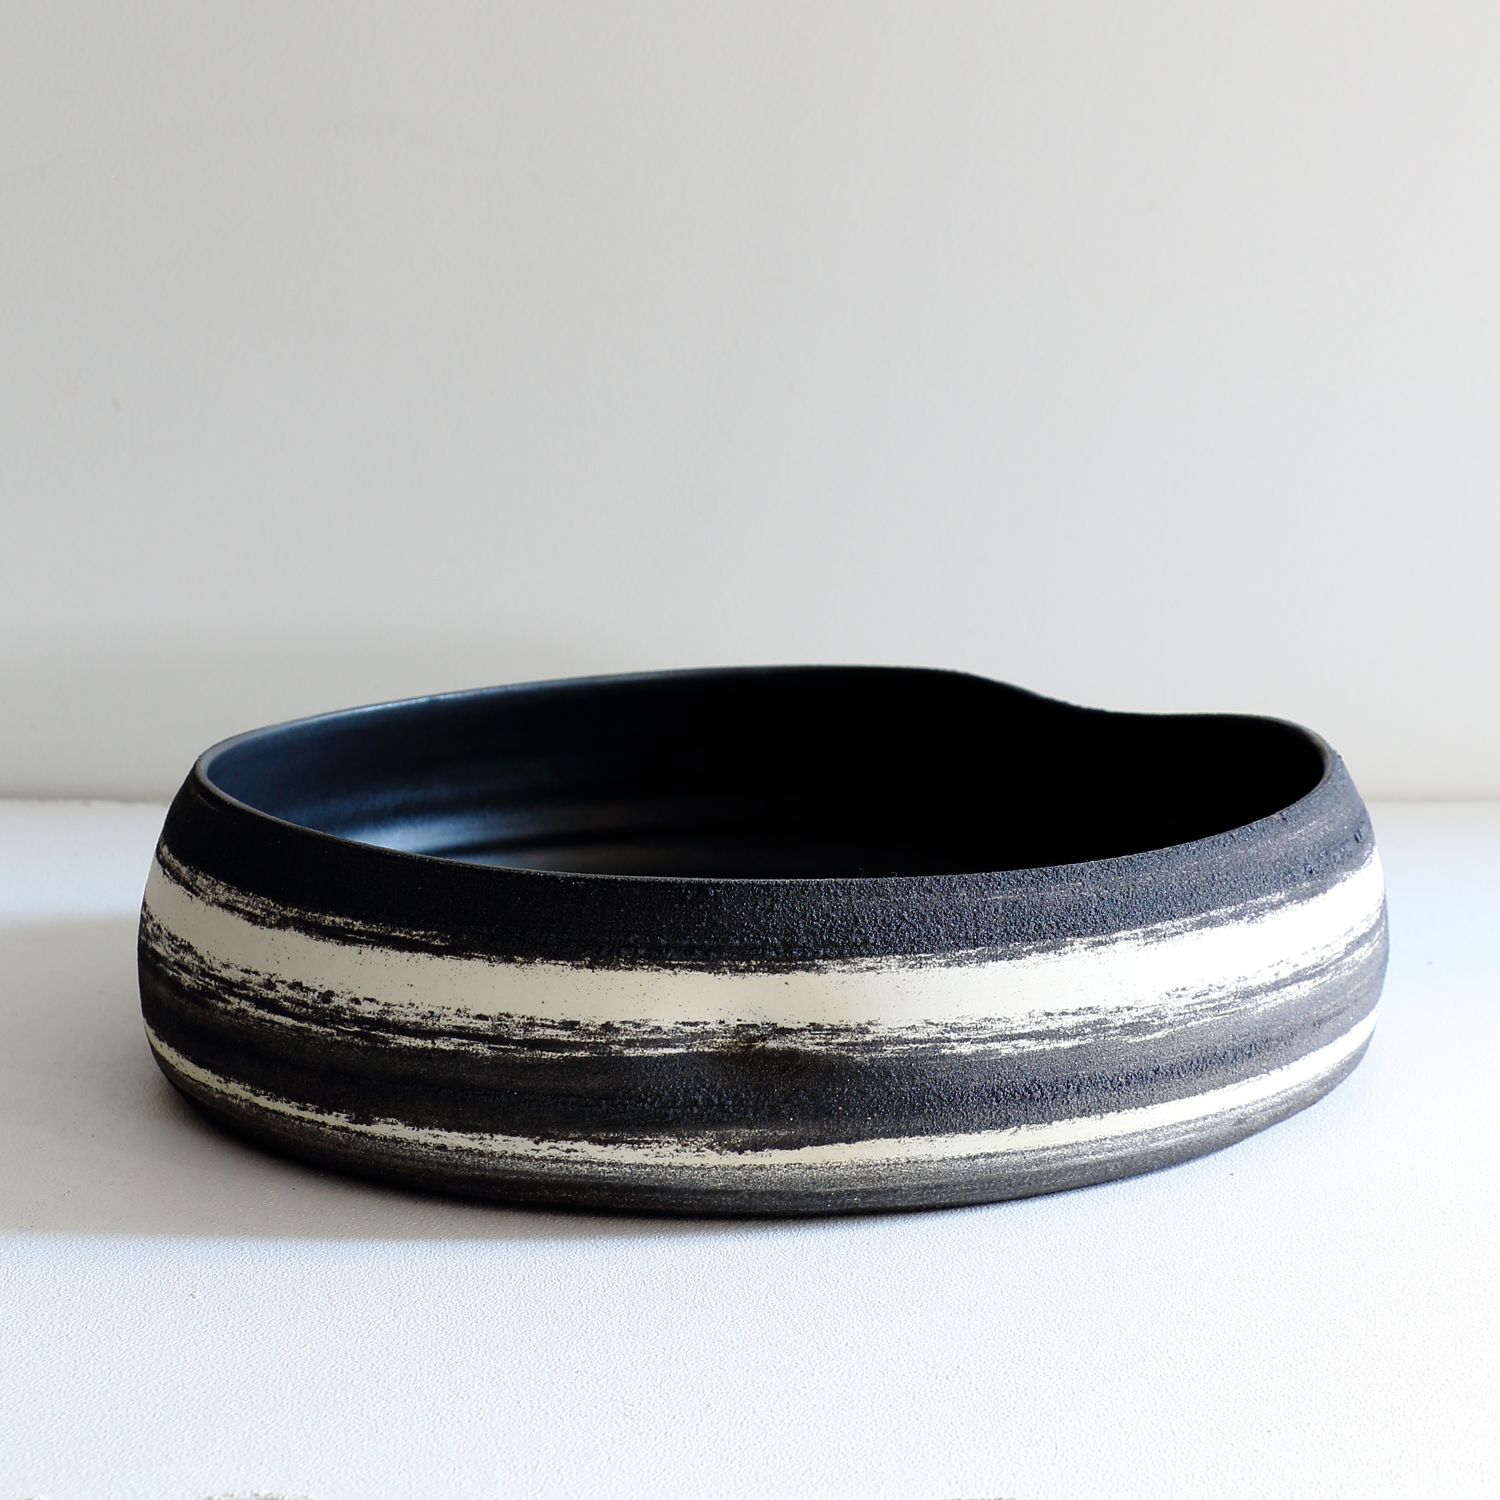 Celina Kang: Large Meta-morphic Bowl (Black) Product Image 1 of 1